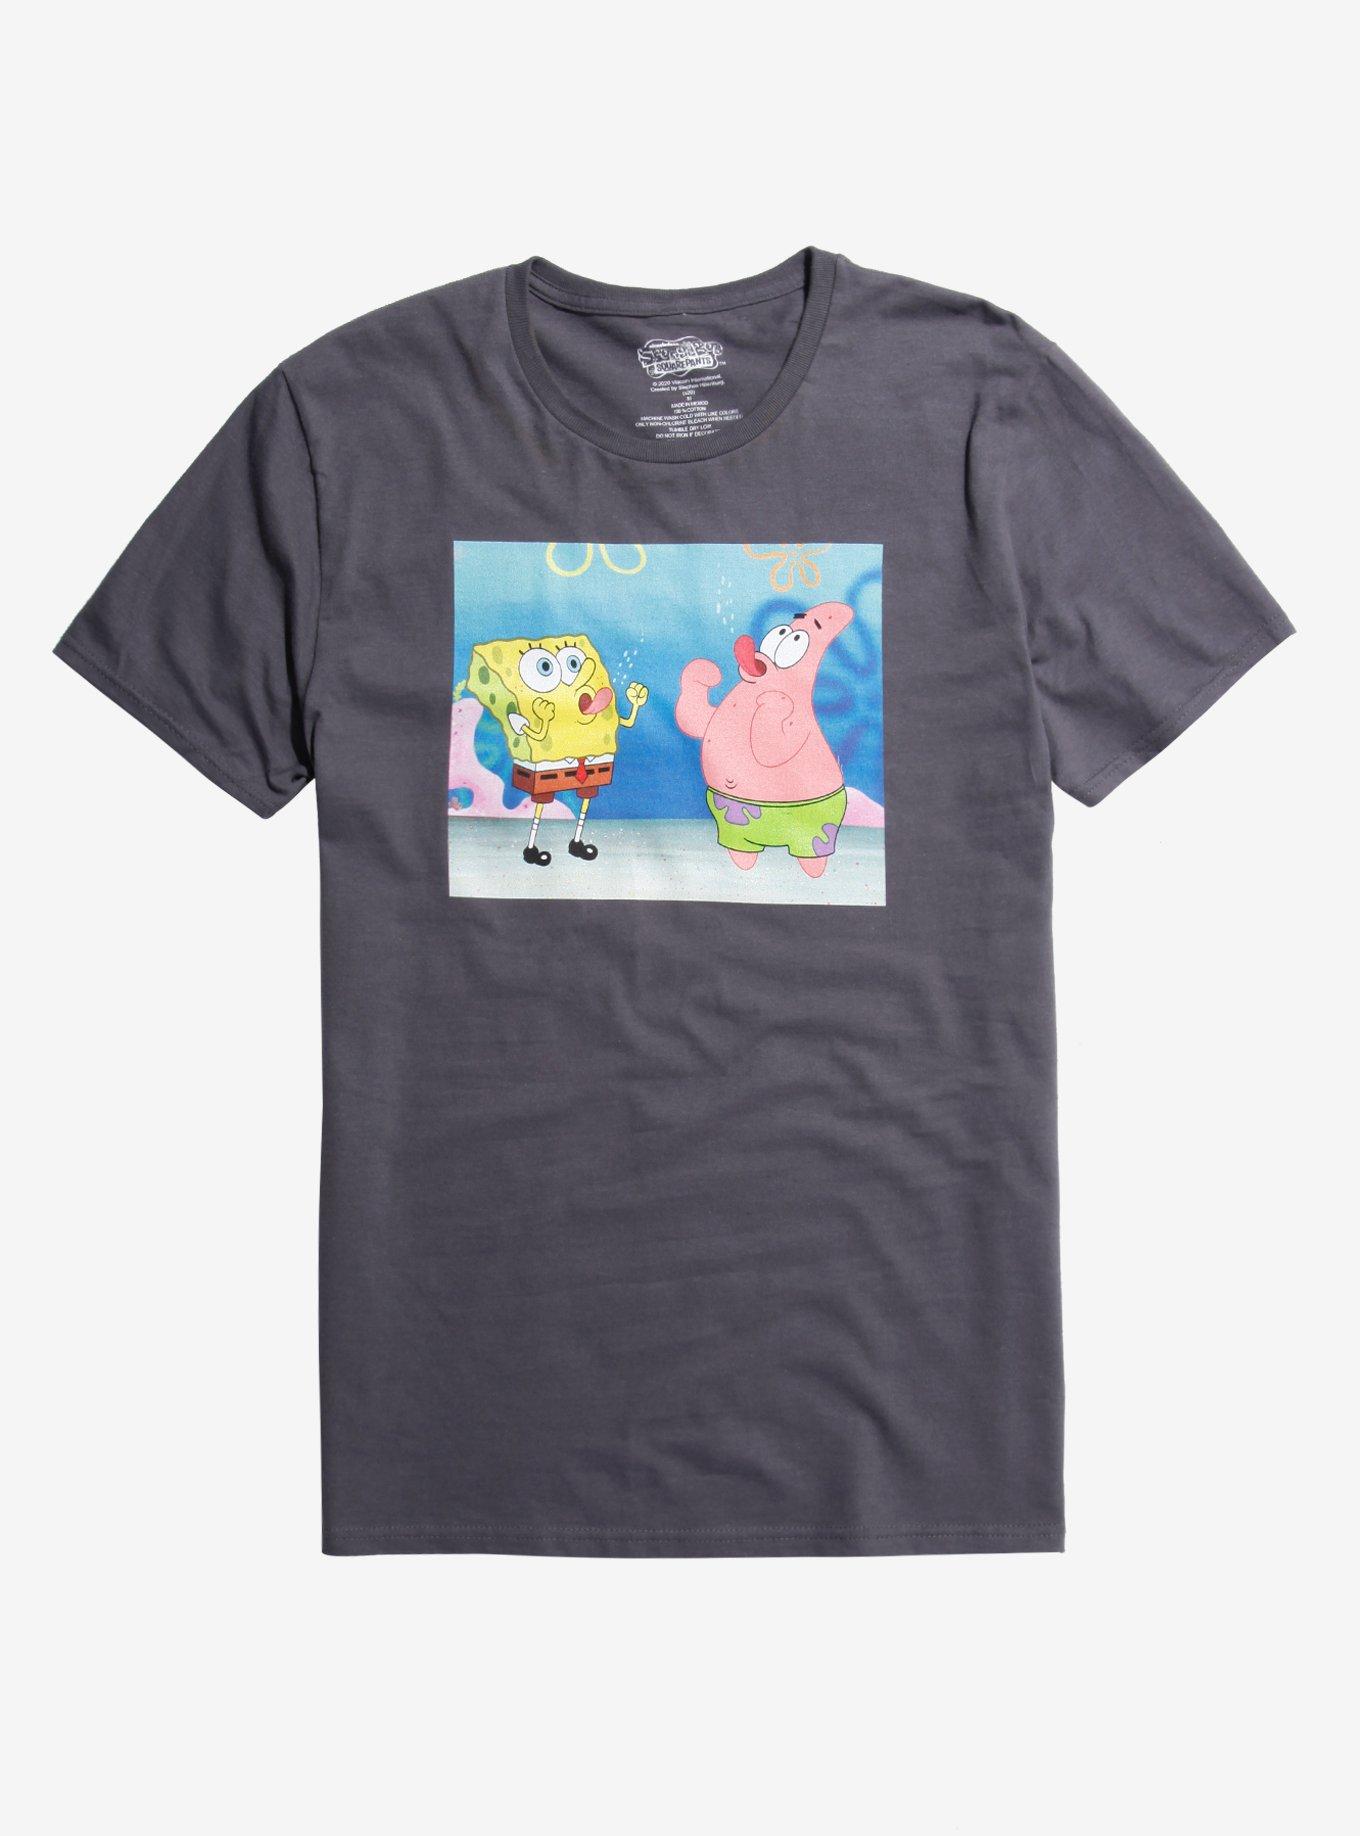 SpongeBob SquarePants The Magic Conch T-Shirt, CHARCOAL  GREY, hi-res